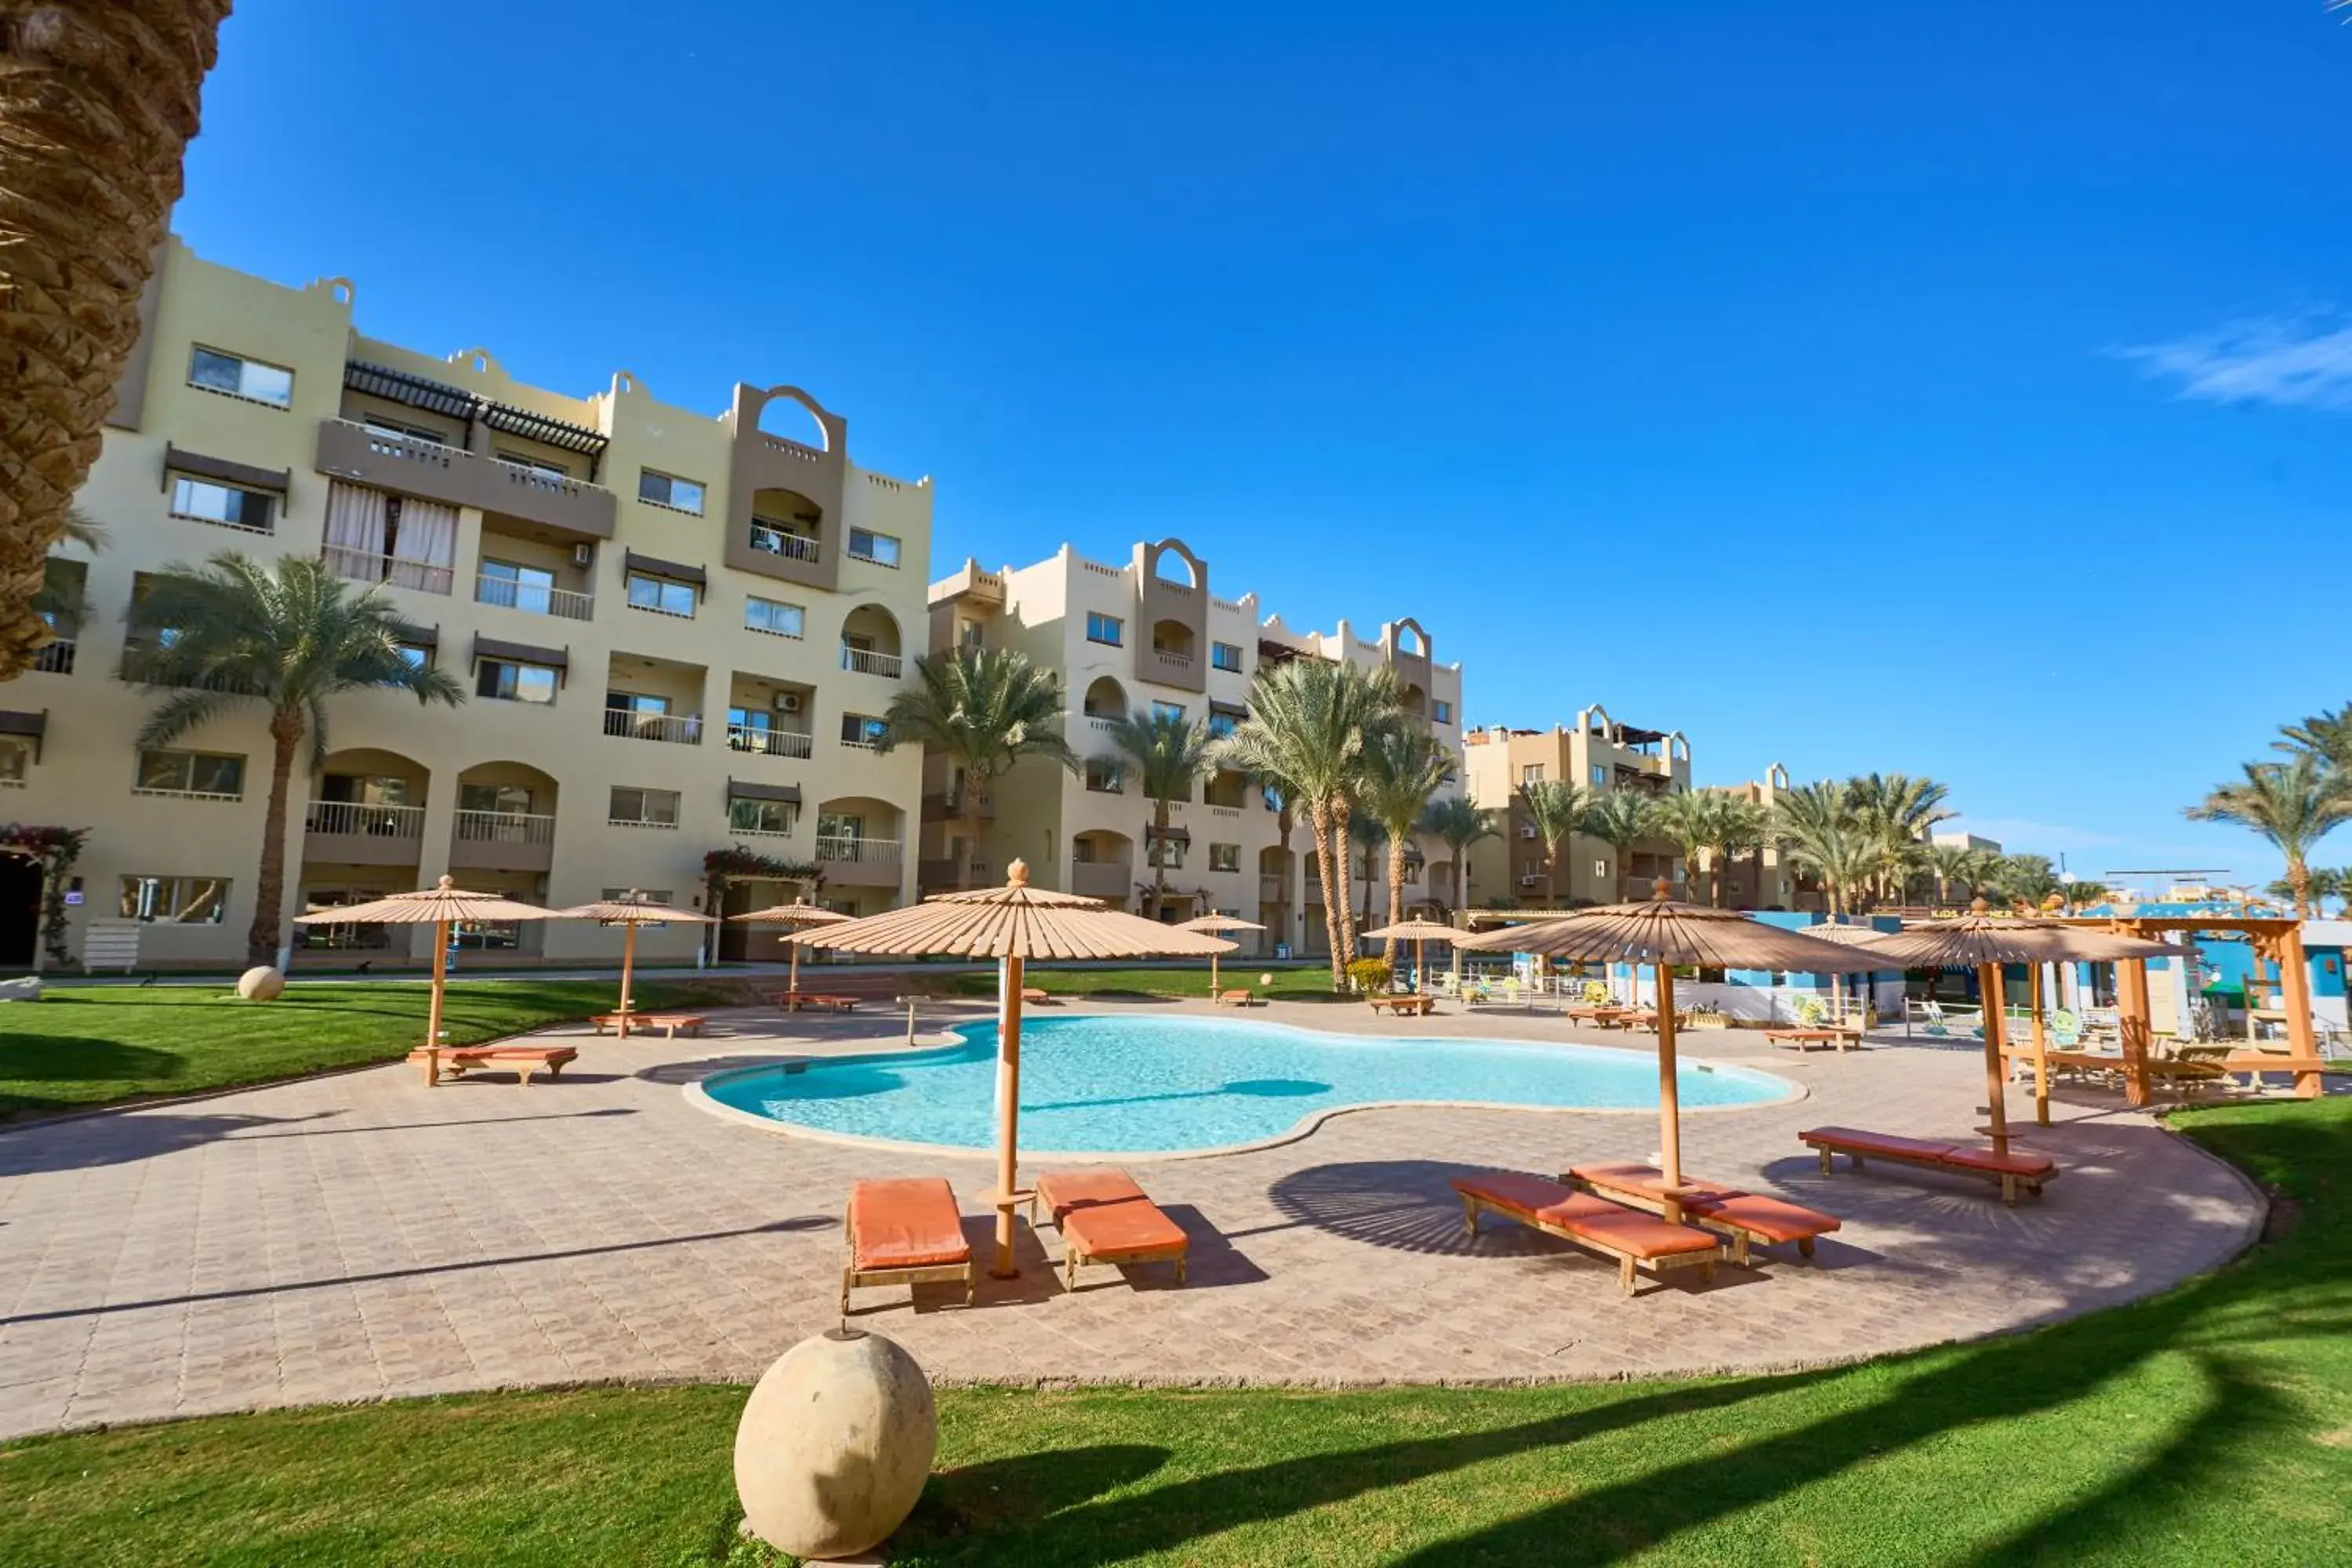 Swimming Pool in El Karma Beach Resort & Aqua Park - Hurghada